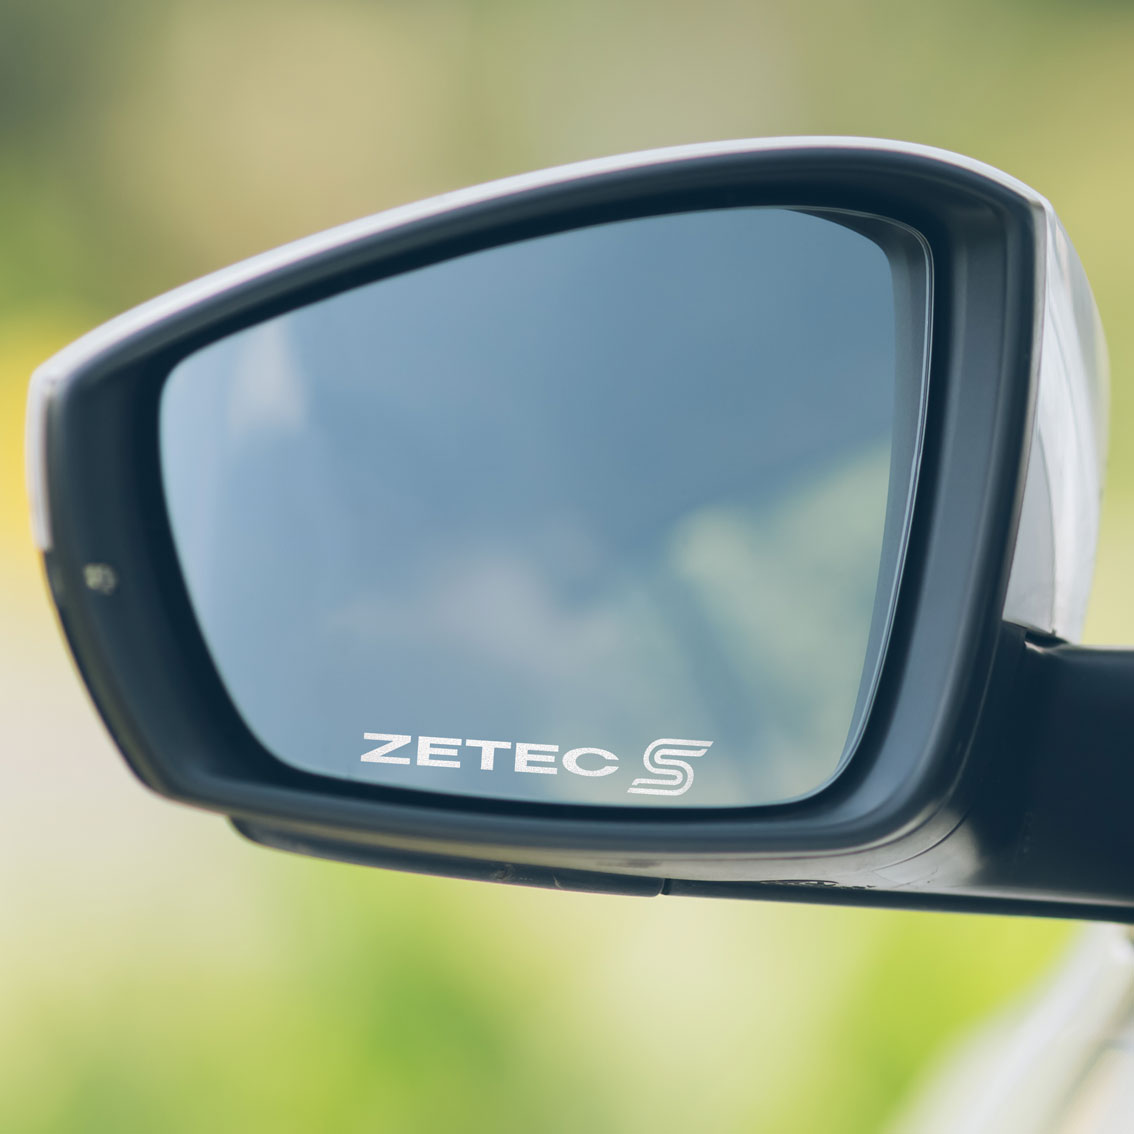 Ford Fiesta Zetec S Wing Mirror Decals